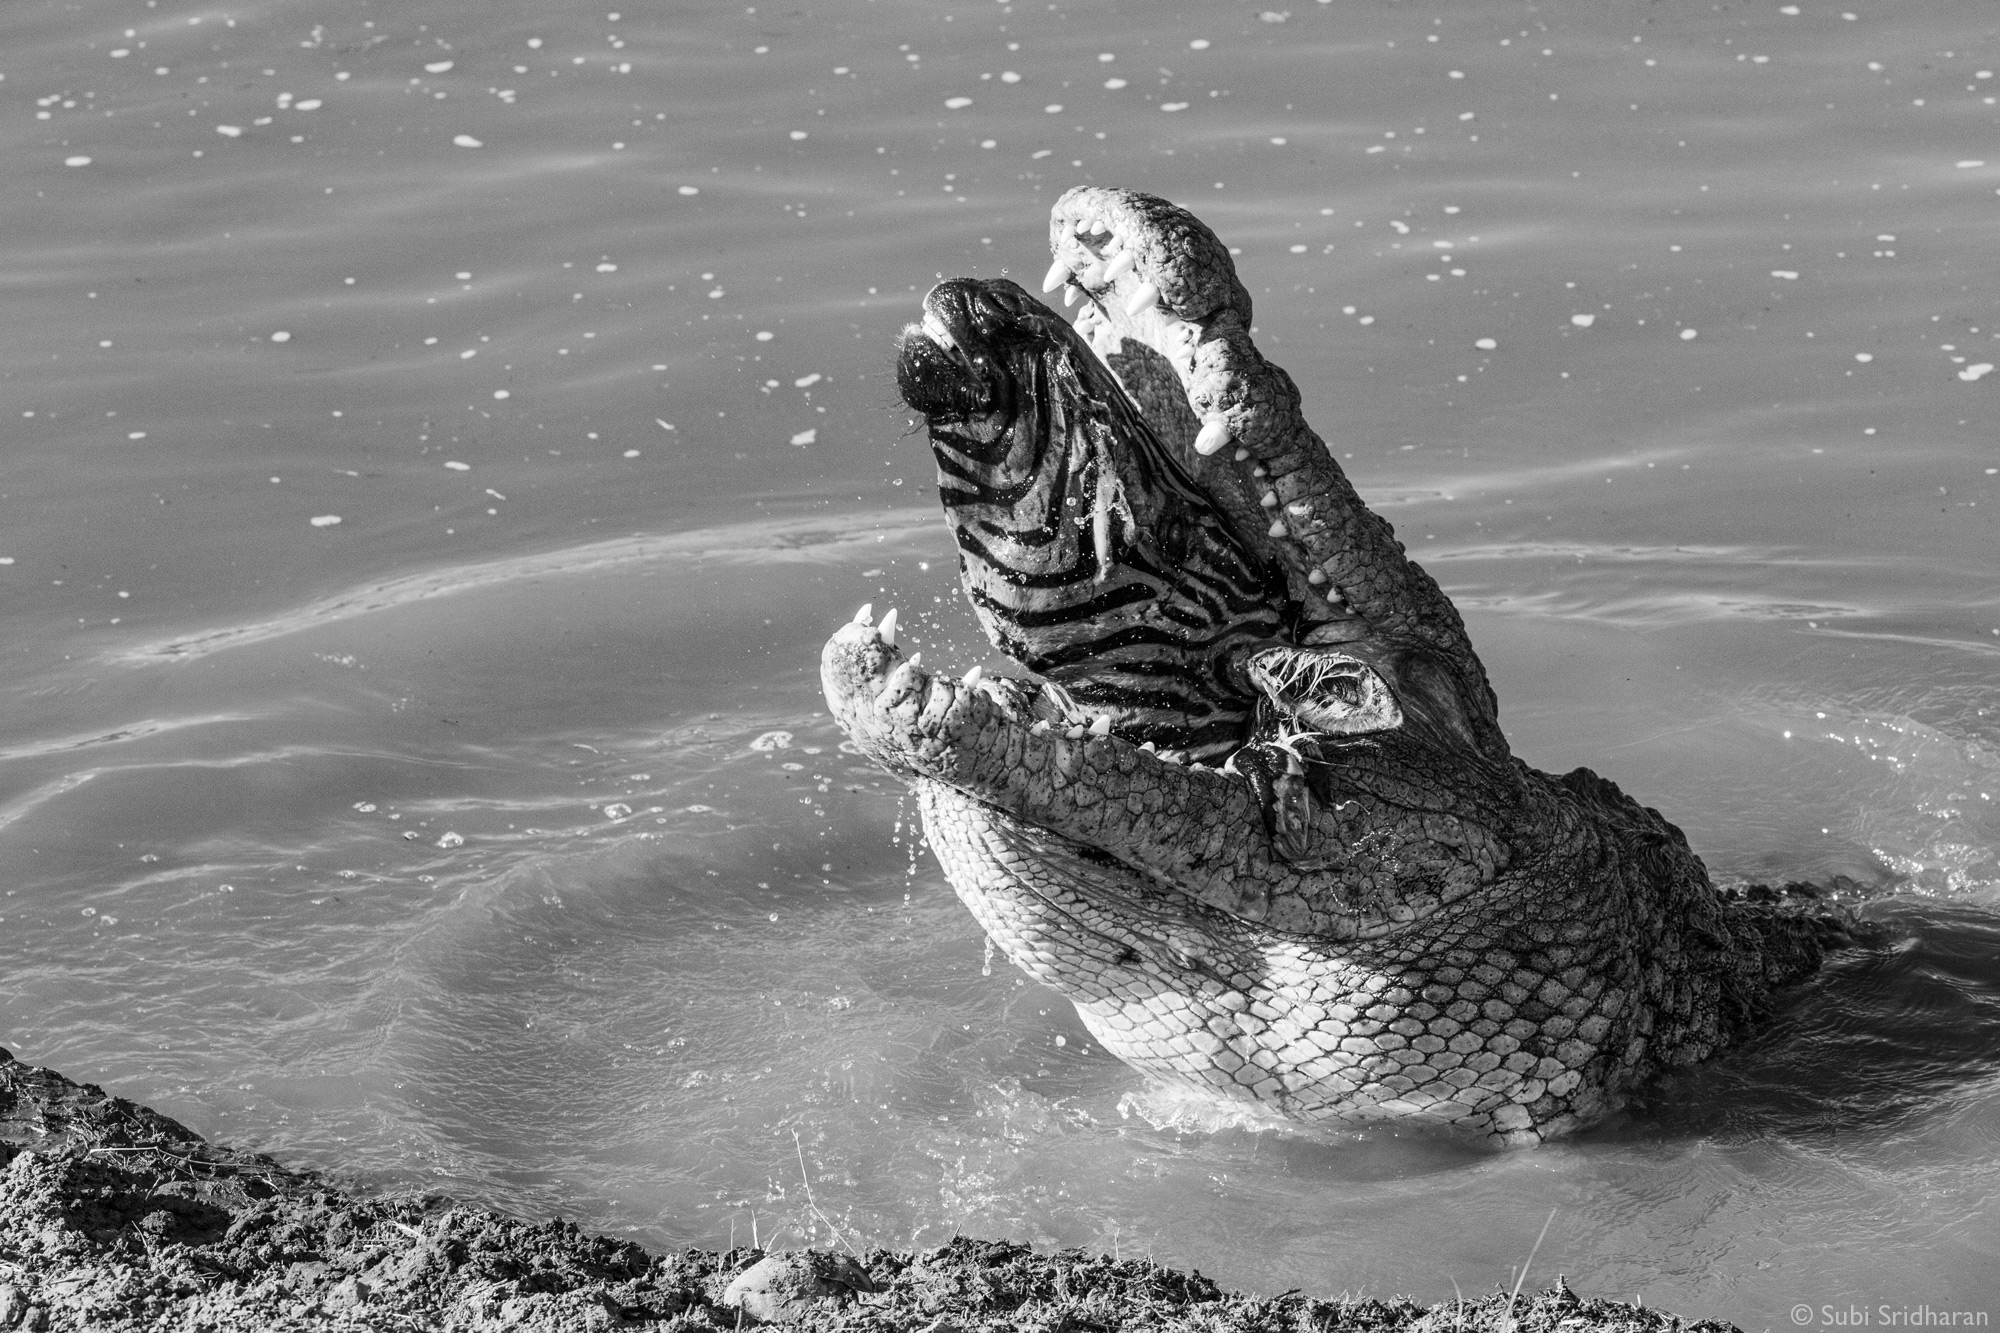 Crocodile eating zebra in the river